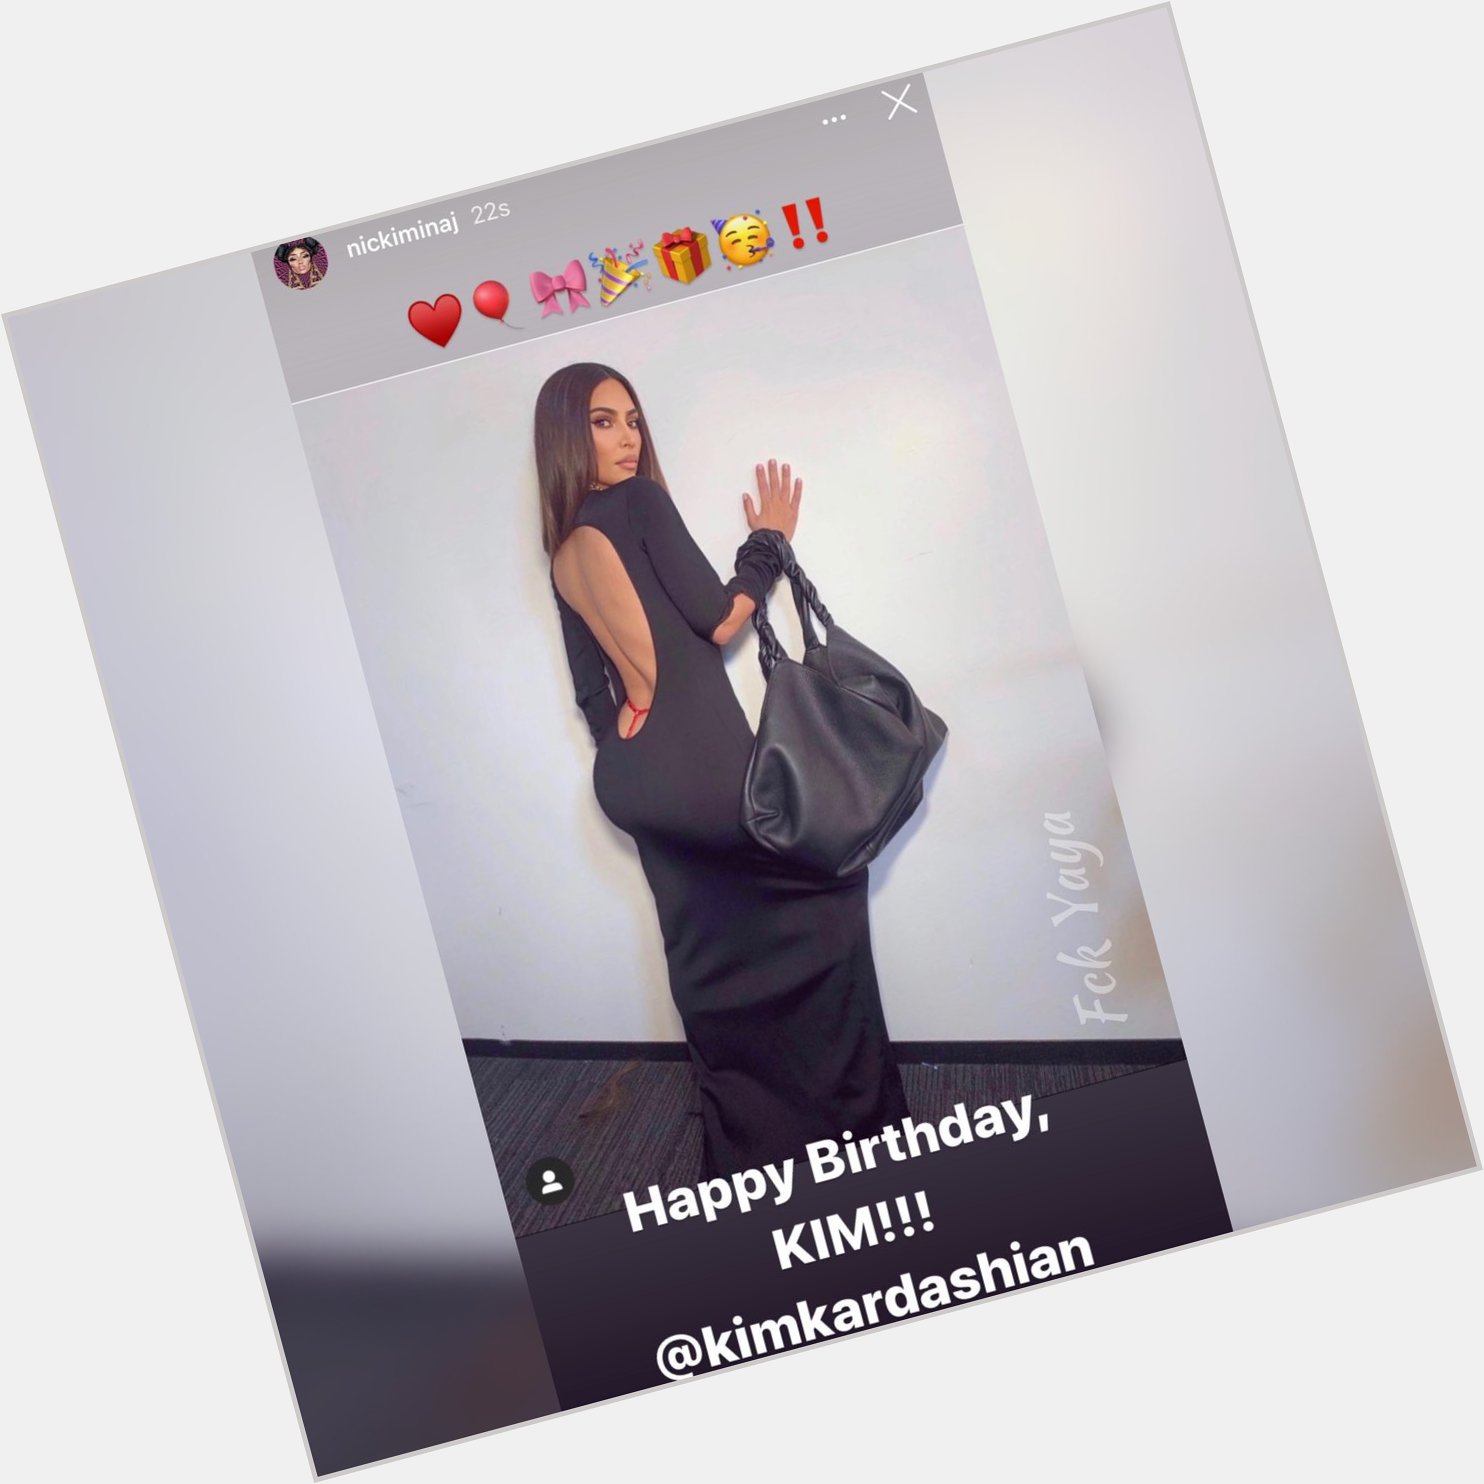 Nicki Minaj wishes Kim Kardashian a Happy Birthday 